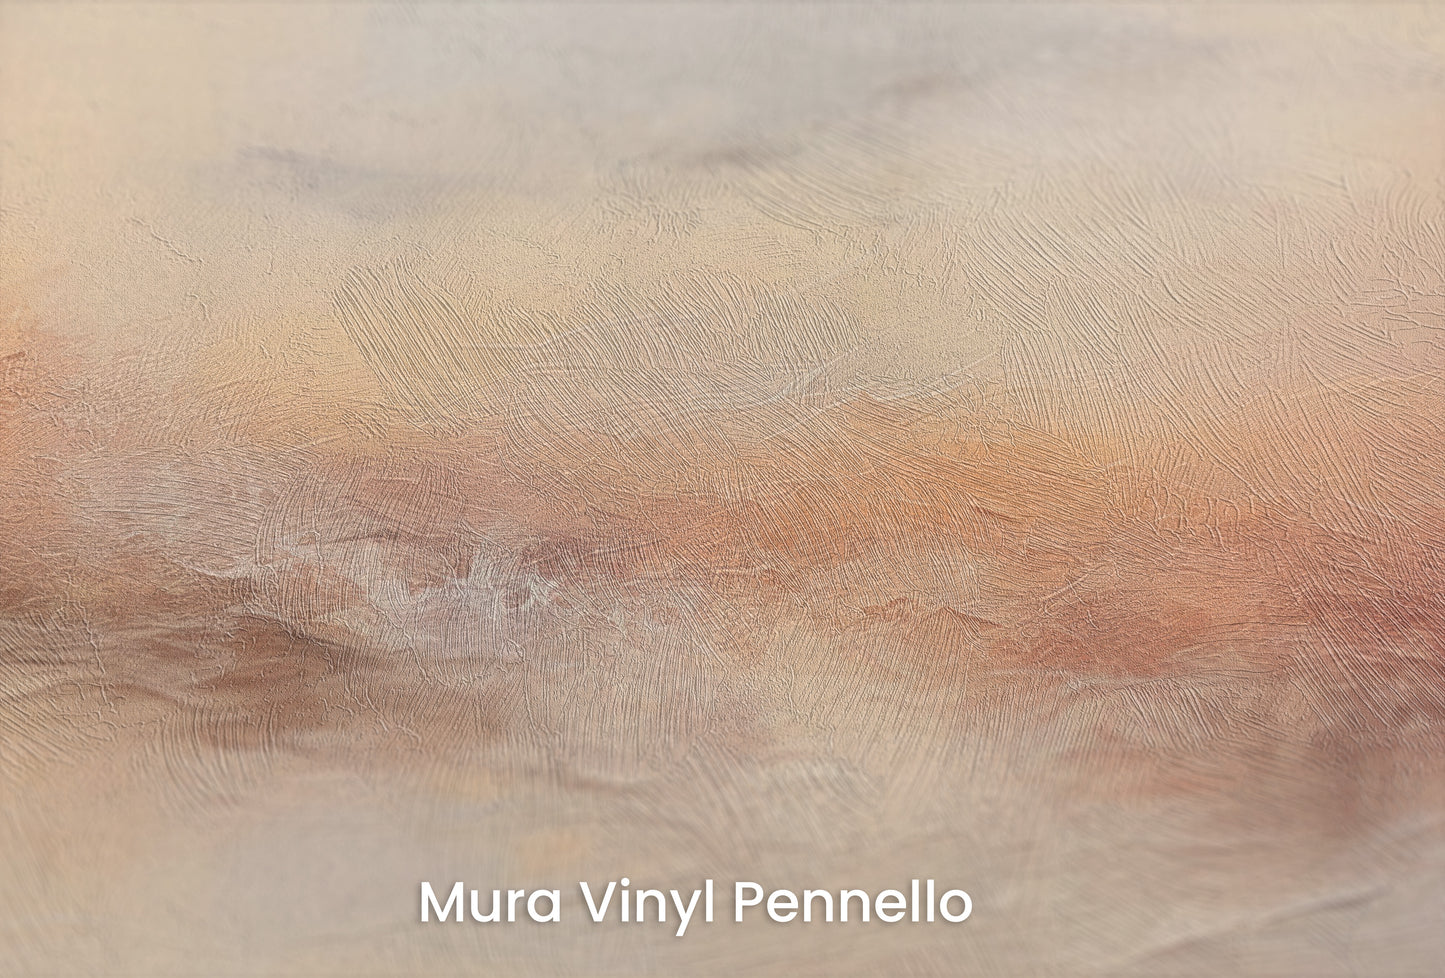 Zbliżenie na artystyczną fototapetę o nazwie MORNING MIST ABLAZE na podłożu Mura Vinyl Pennello - faktura pociągnięć pędzla malarskiego.